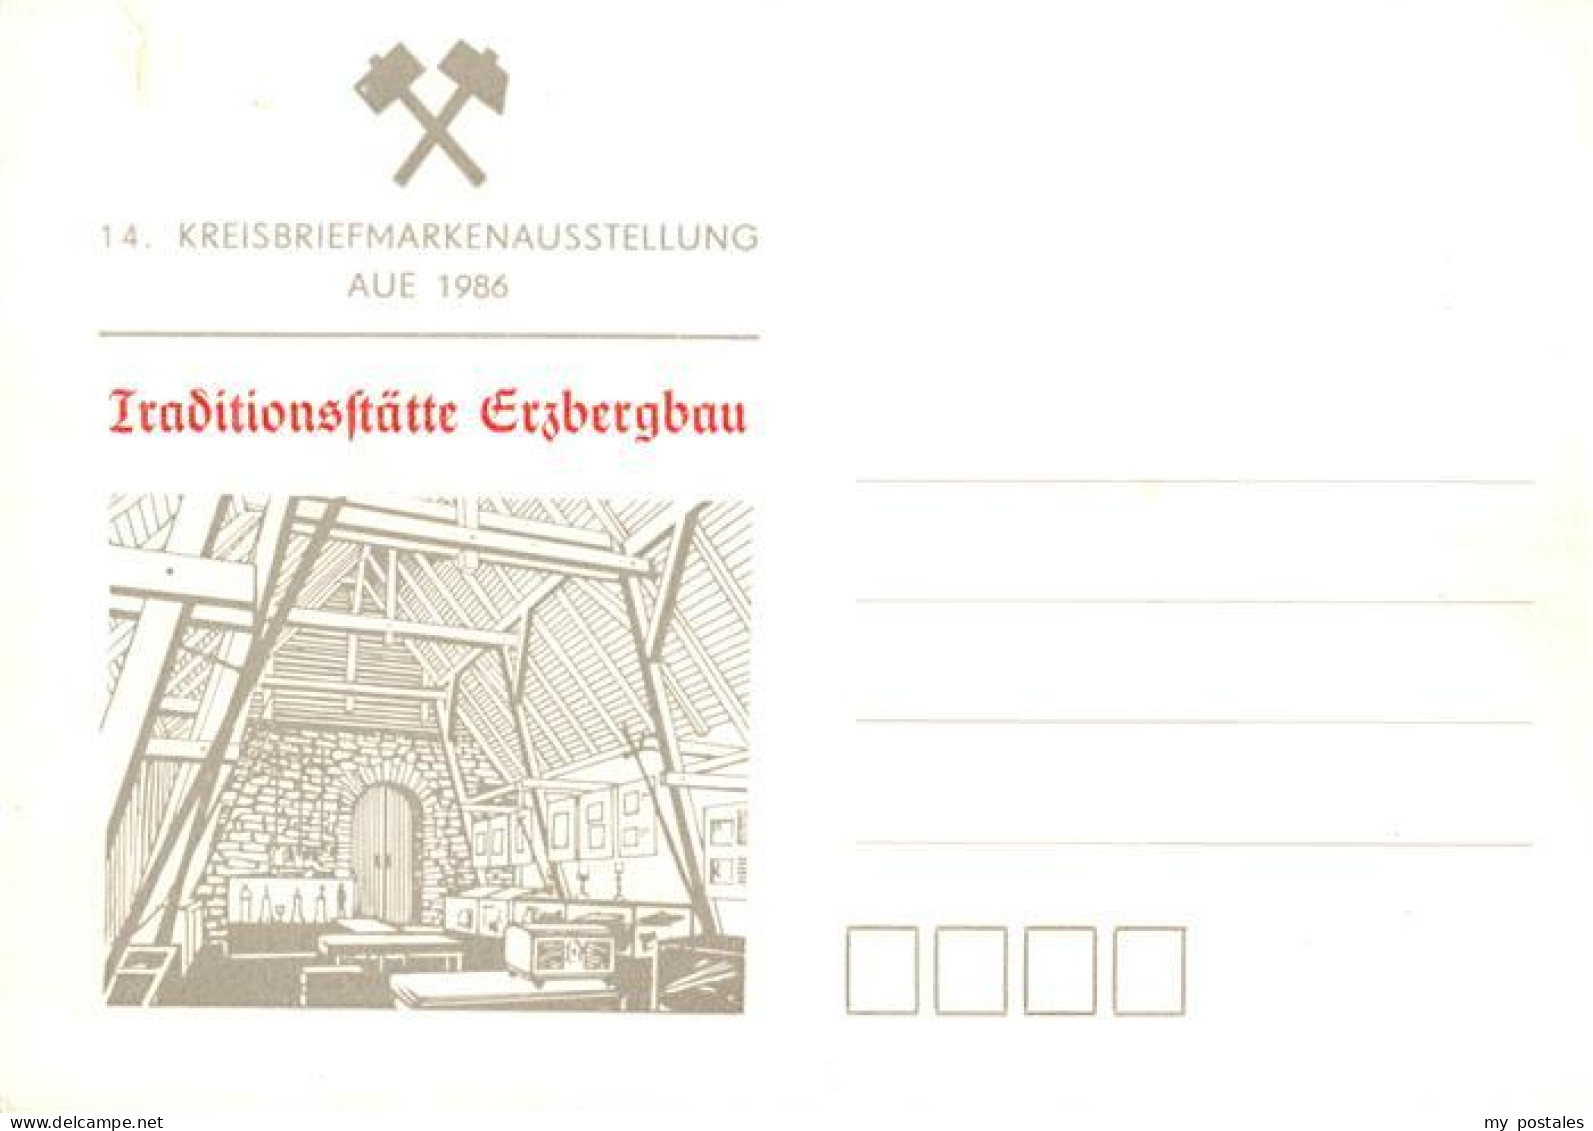 73921086 Aue_Erzgebirge Kreisbriefmarkenausstellung 1986 Traditionsstaette Erzbe - Aue